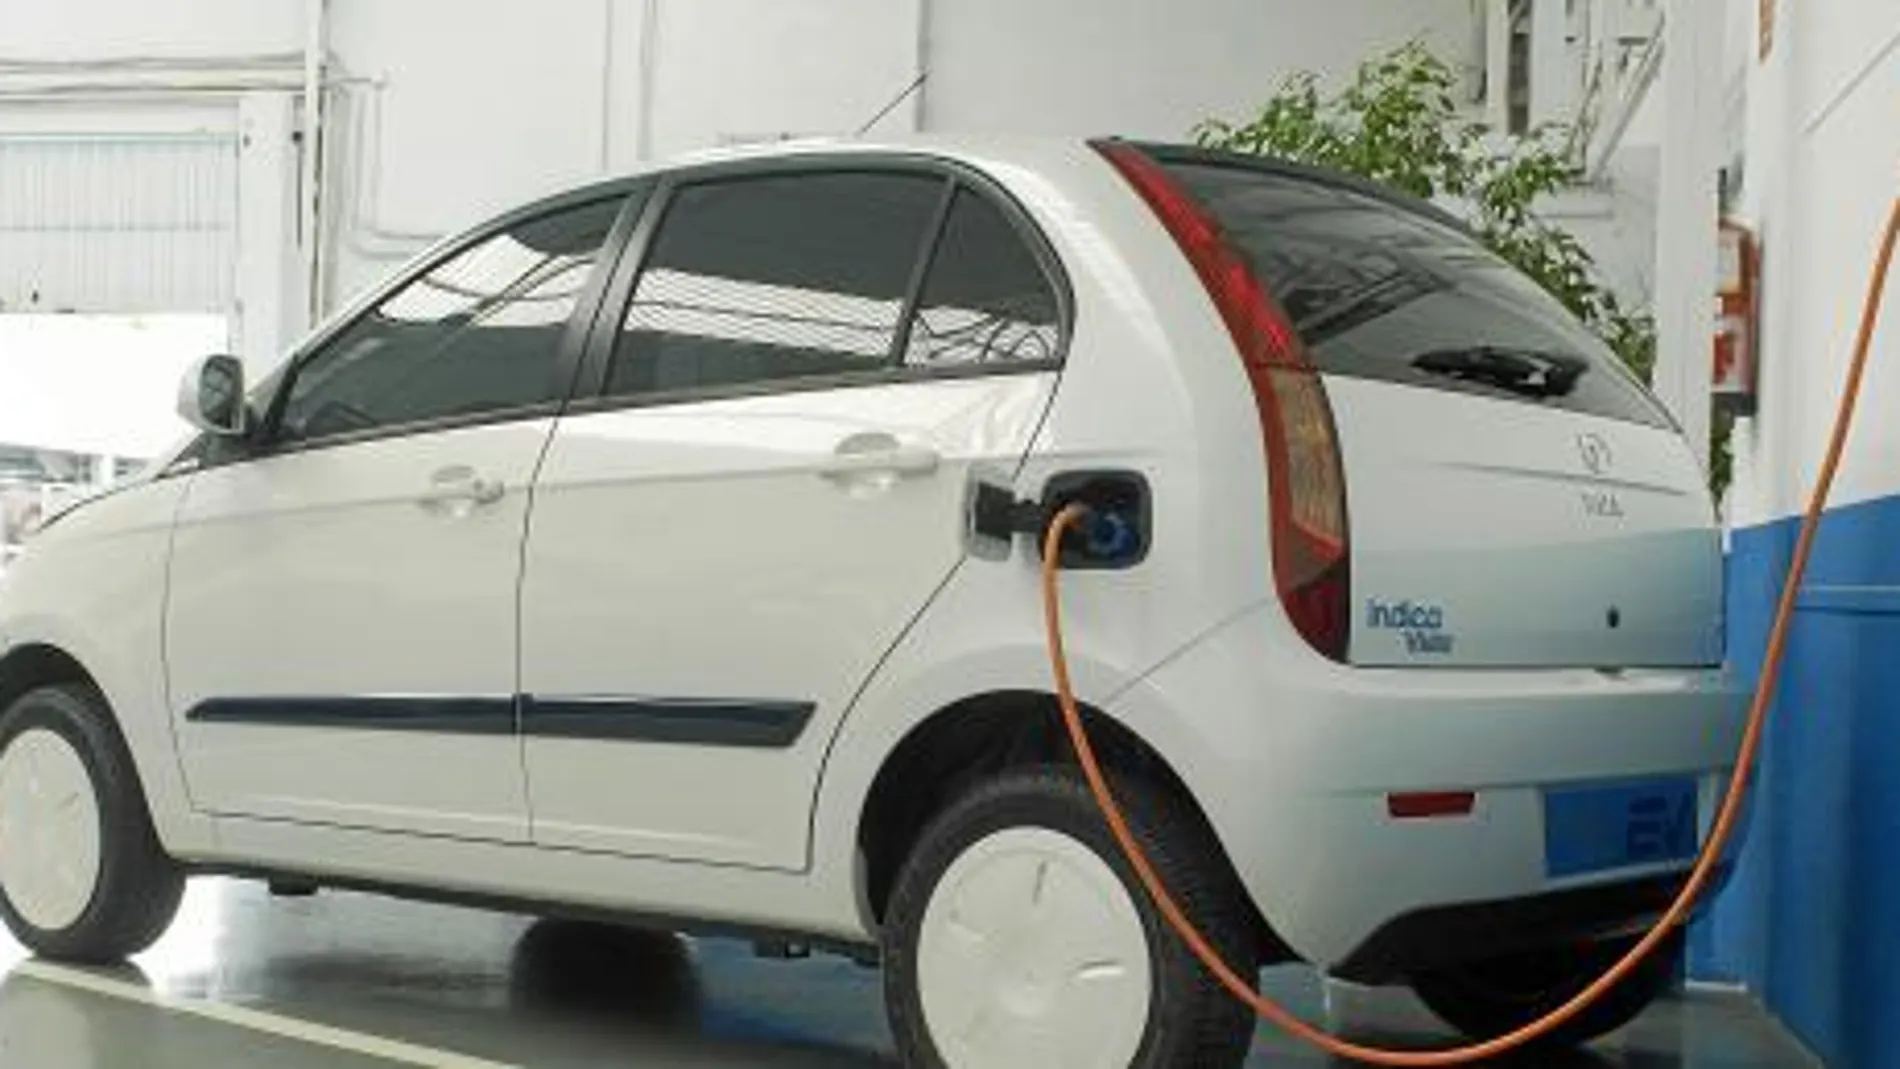 El Tata Indica es un vehículo eléctrico con una autonomía de hasta 120 kilómetros, capaz de superar los cien por hora